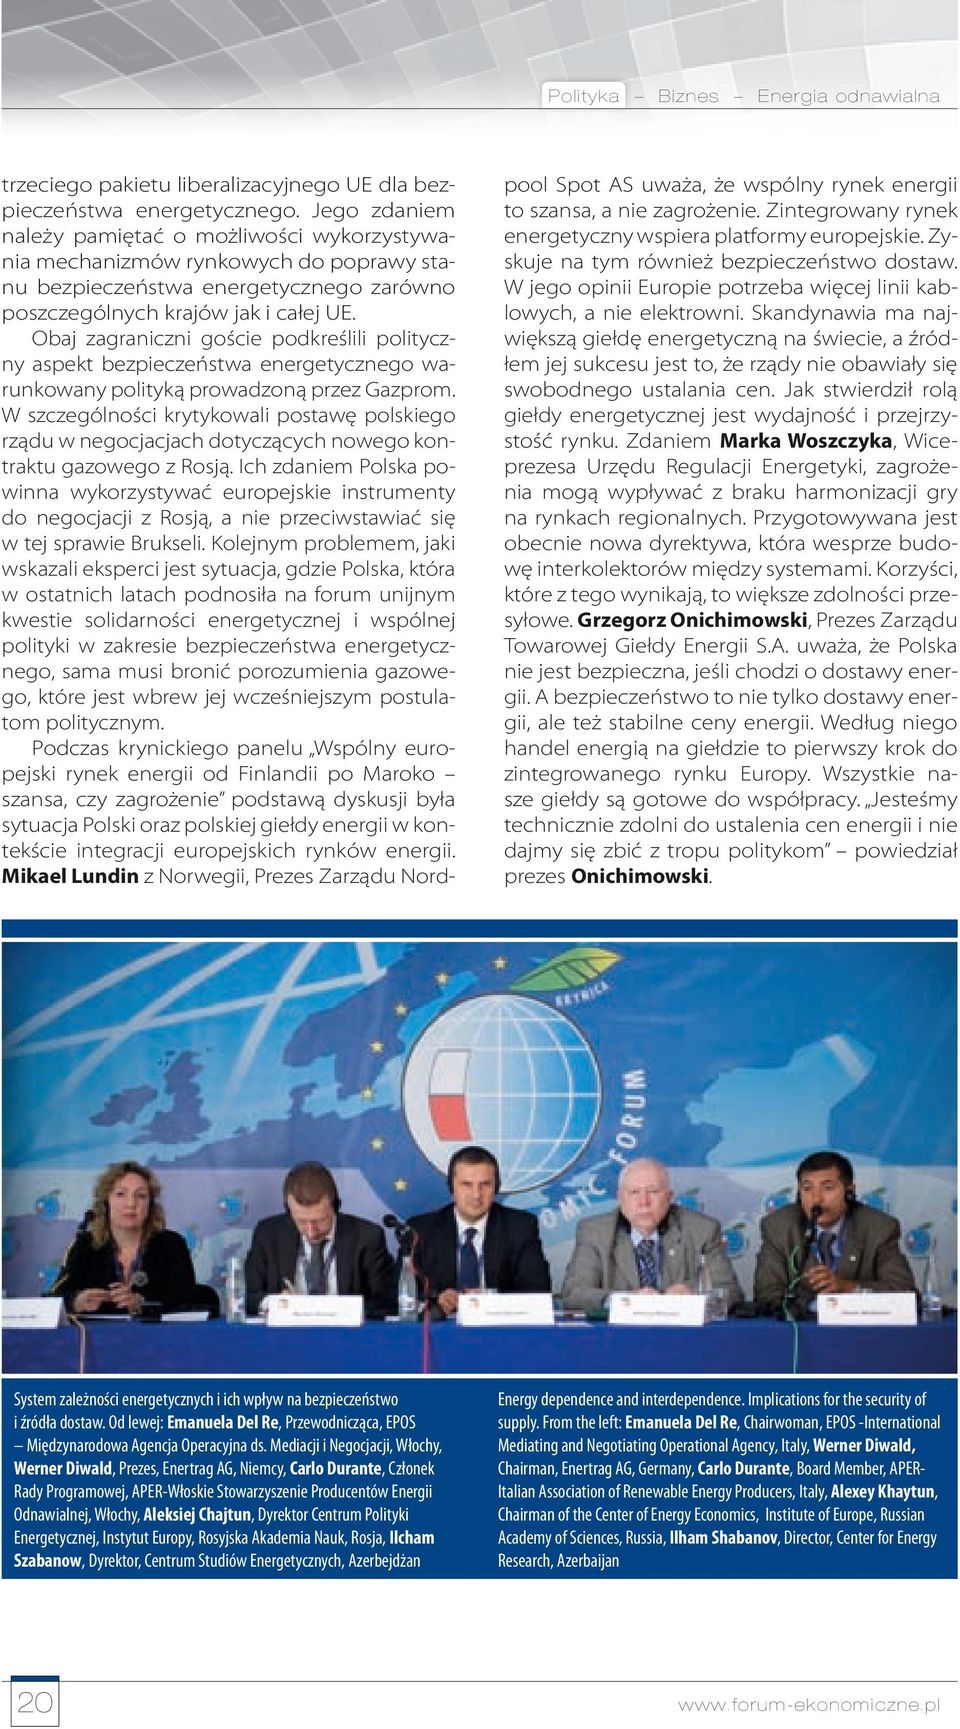 Obaj zagraniczni goście podkreślili polityczny aspekt bezpieczeństwa energetycznego warunkowany polityką prowadzoną przez Gazprom.